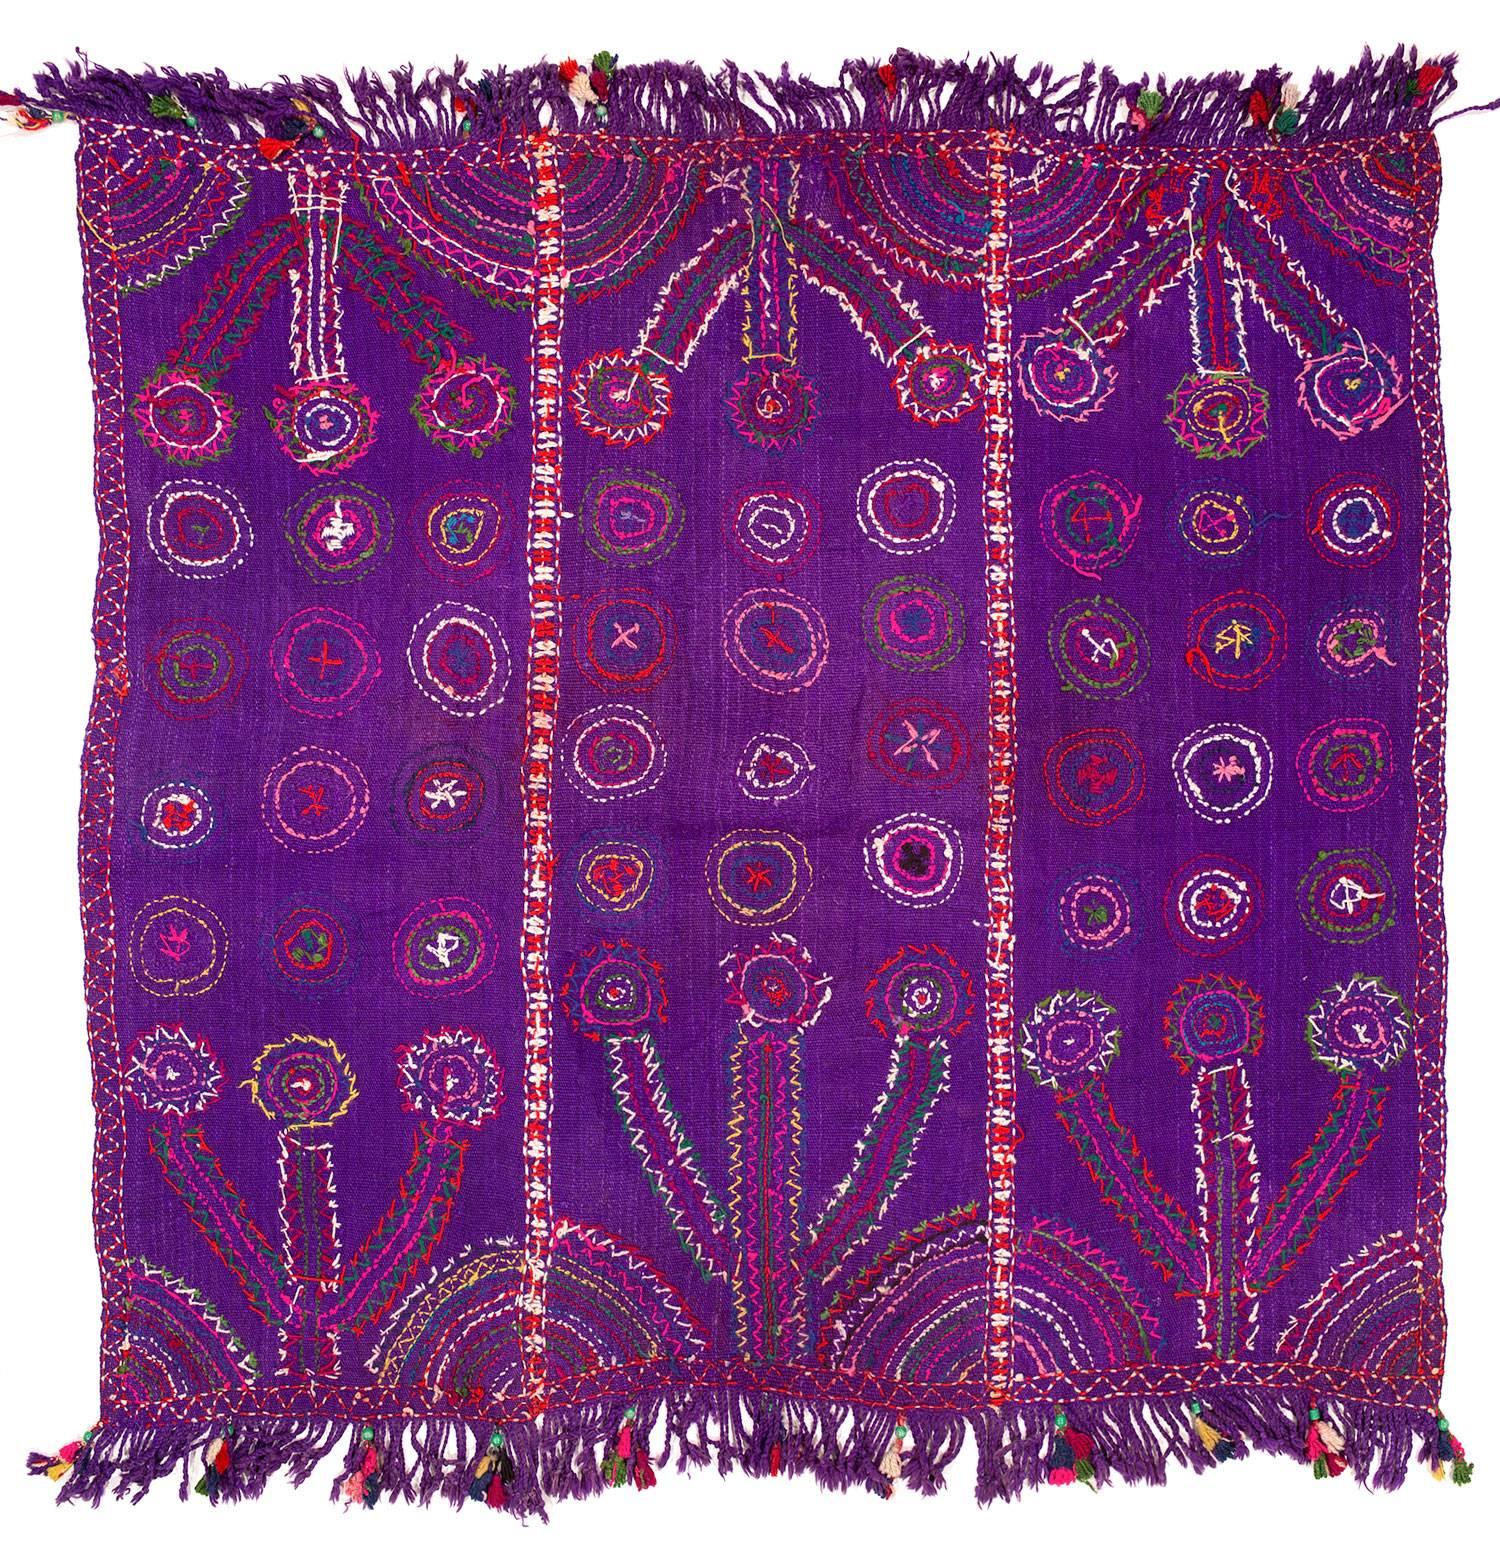 Ein schönes handgesticktes Textil aus der Türkei, das vielleicht 30 oder 40 Jahre alt ist. Ein skurriles Beispiel für textile Volkskunst.